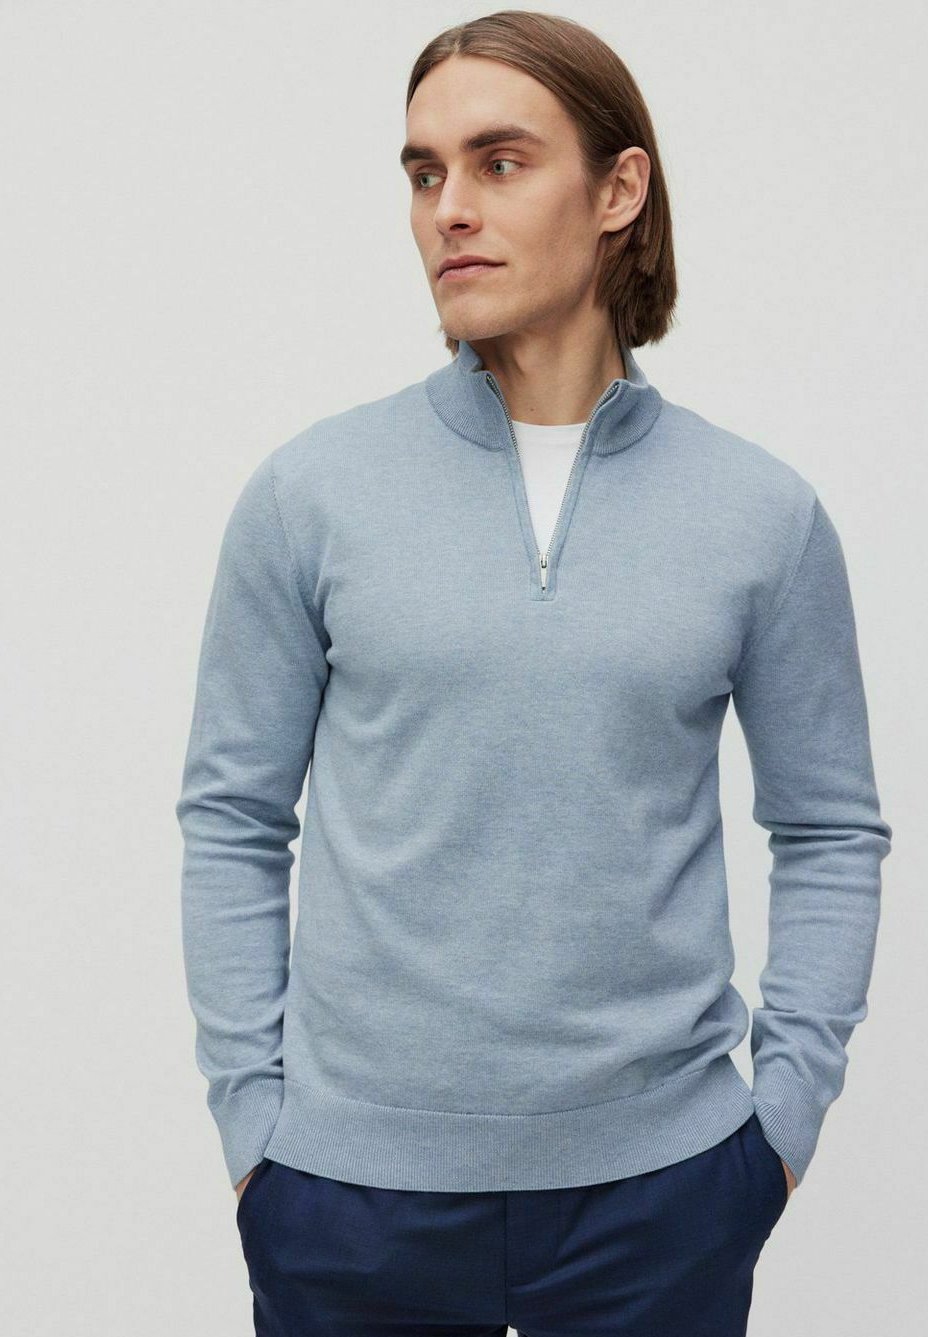 Вязаный свитер Menton halfzip Bläck, цвет light blue mel